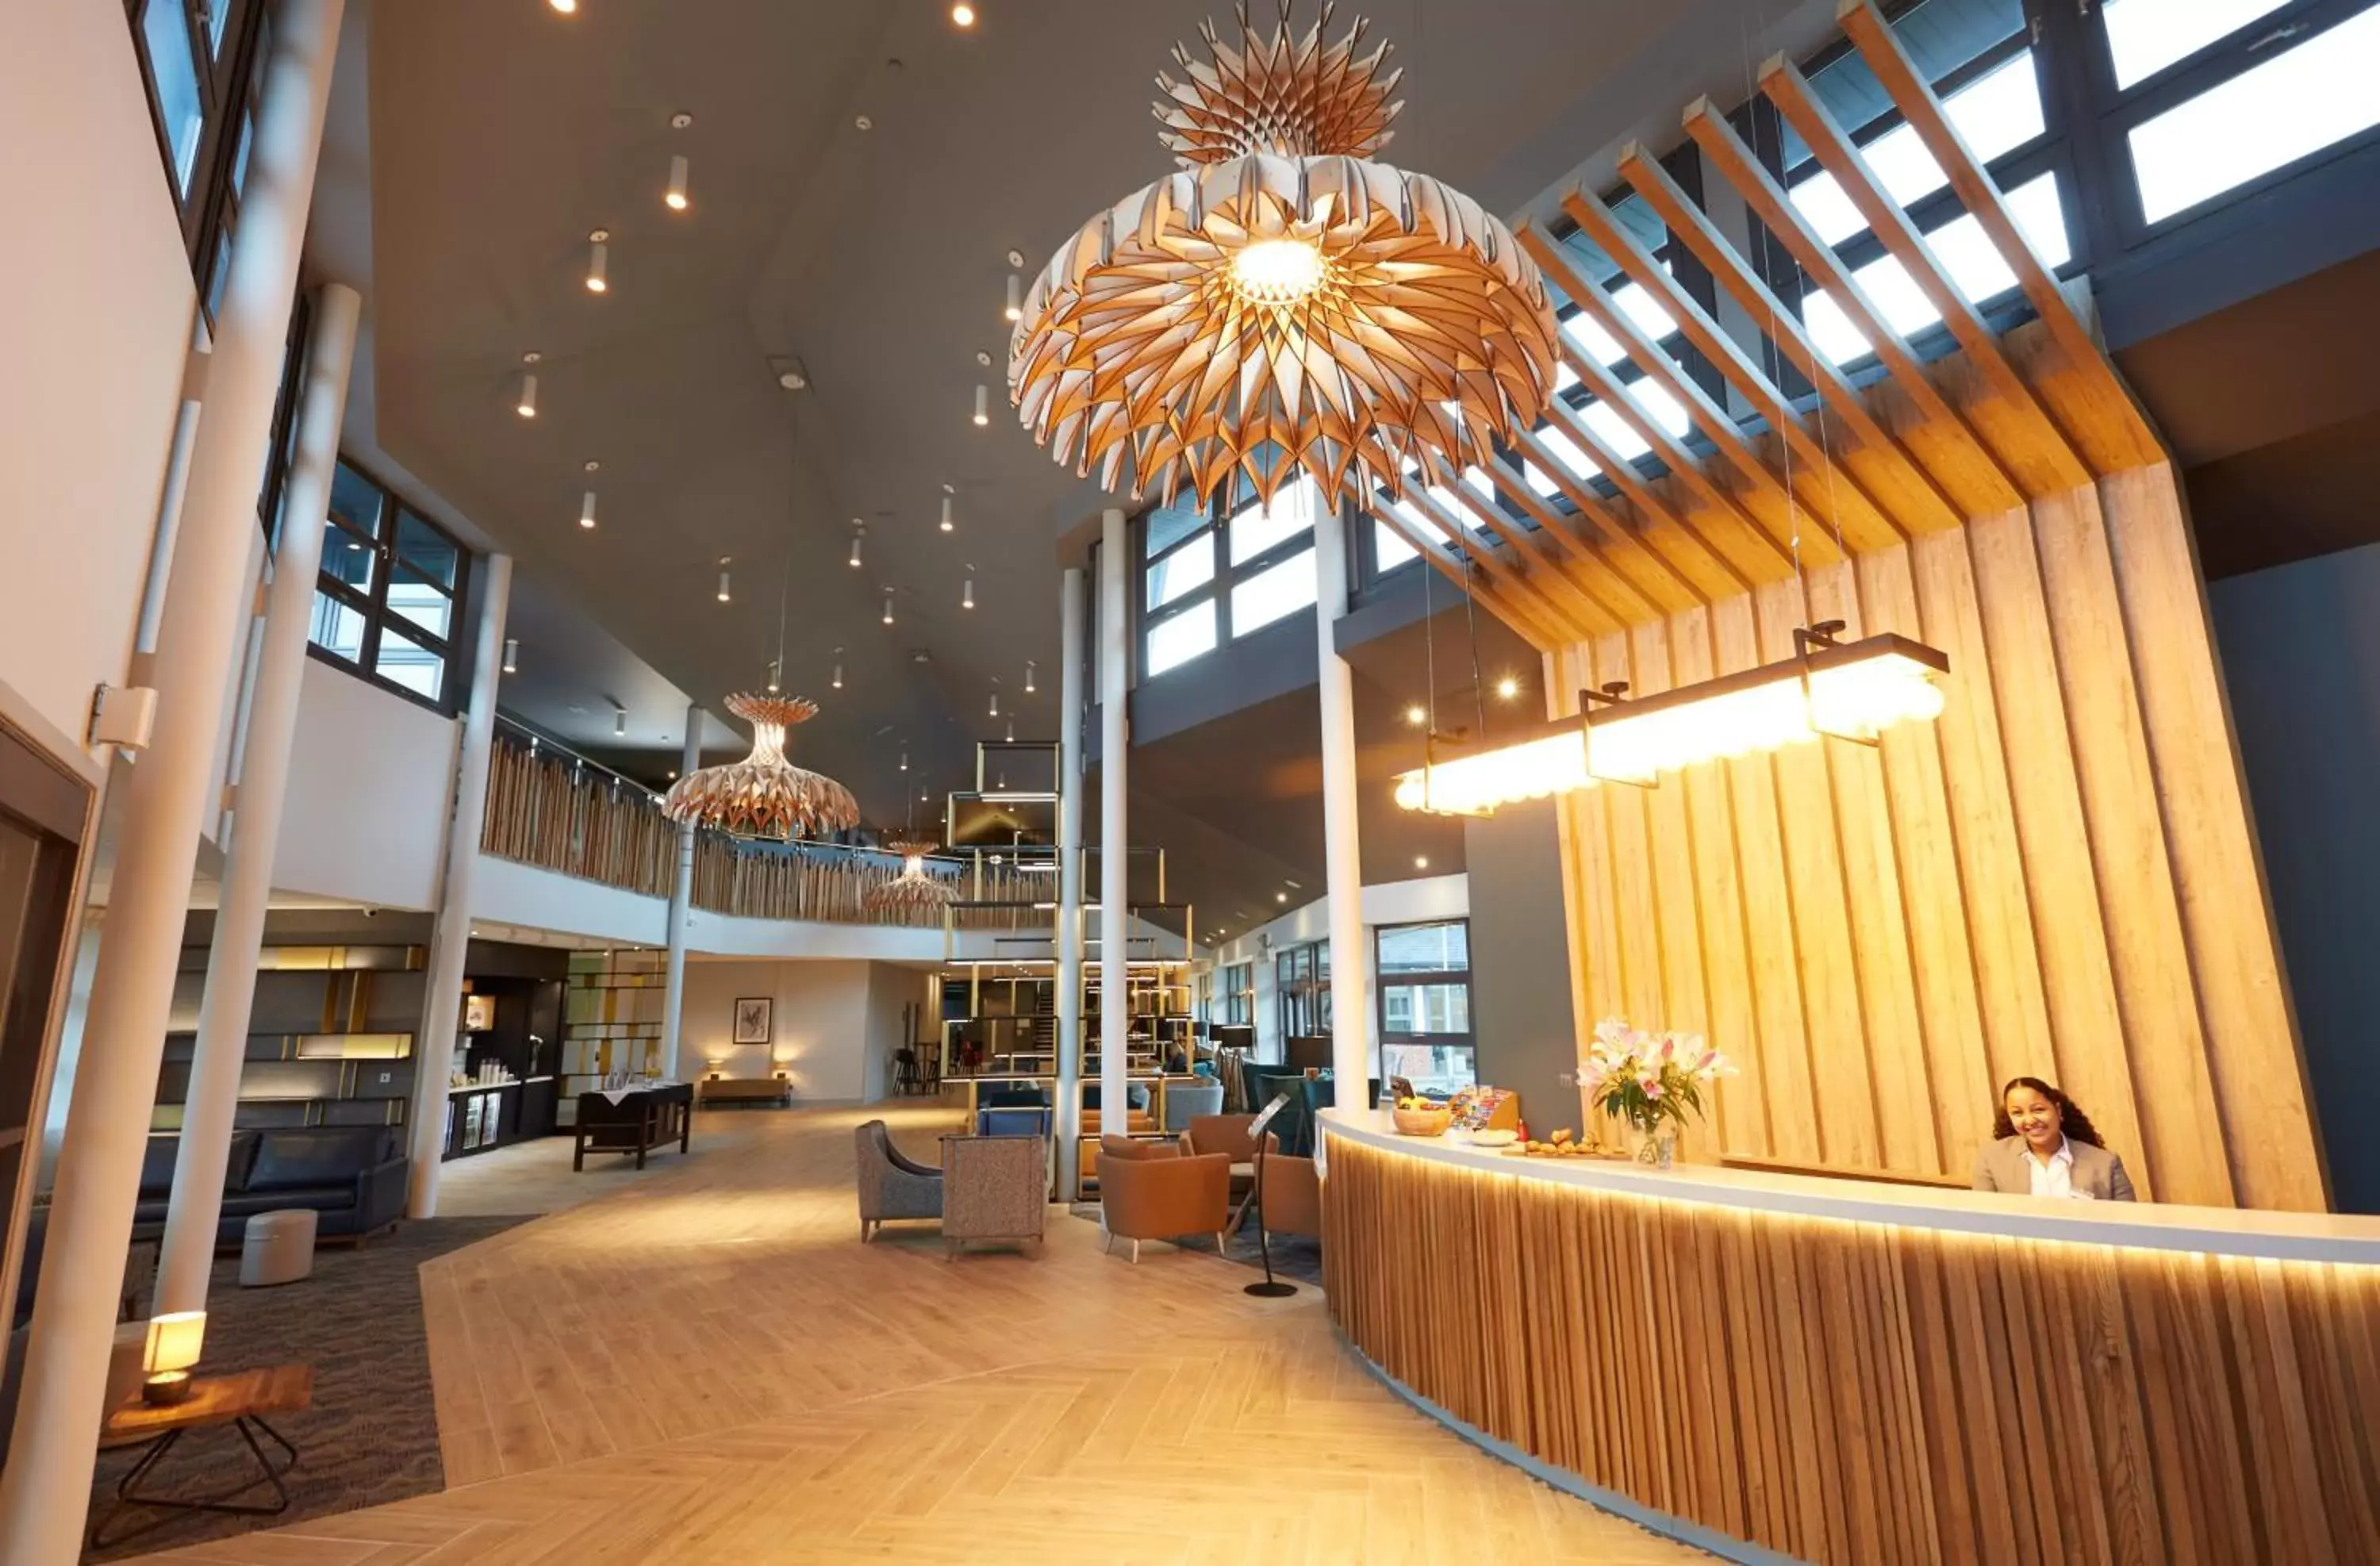 Lobby or reception, Lobby/Reception in Wychwood Park Hotel and Golf Club